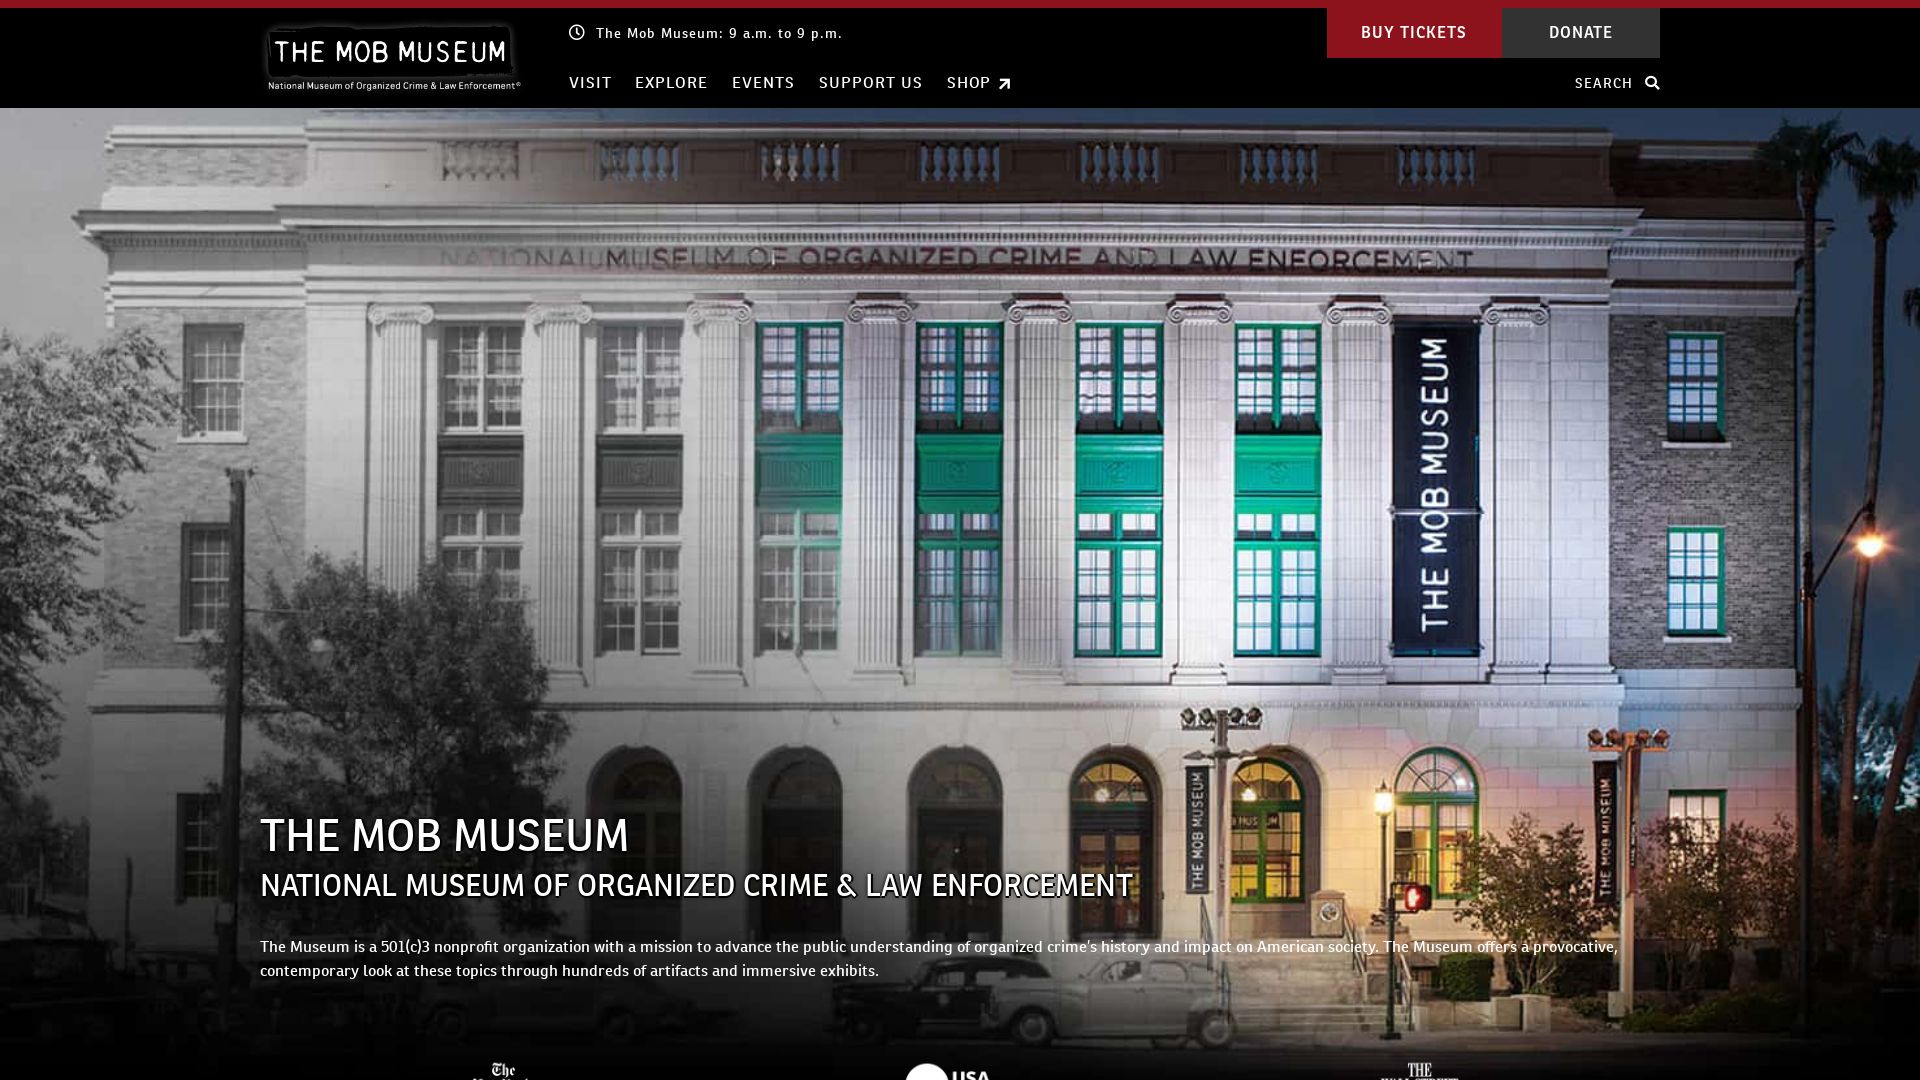 Stato del sito web themobmuseum.org è   ONLINE